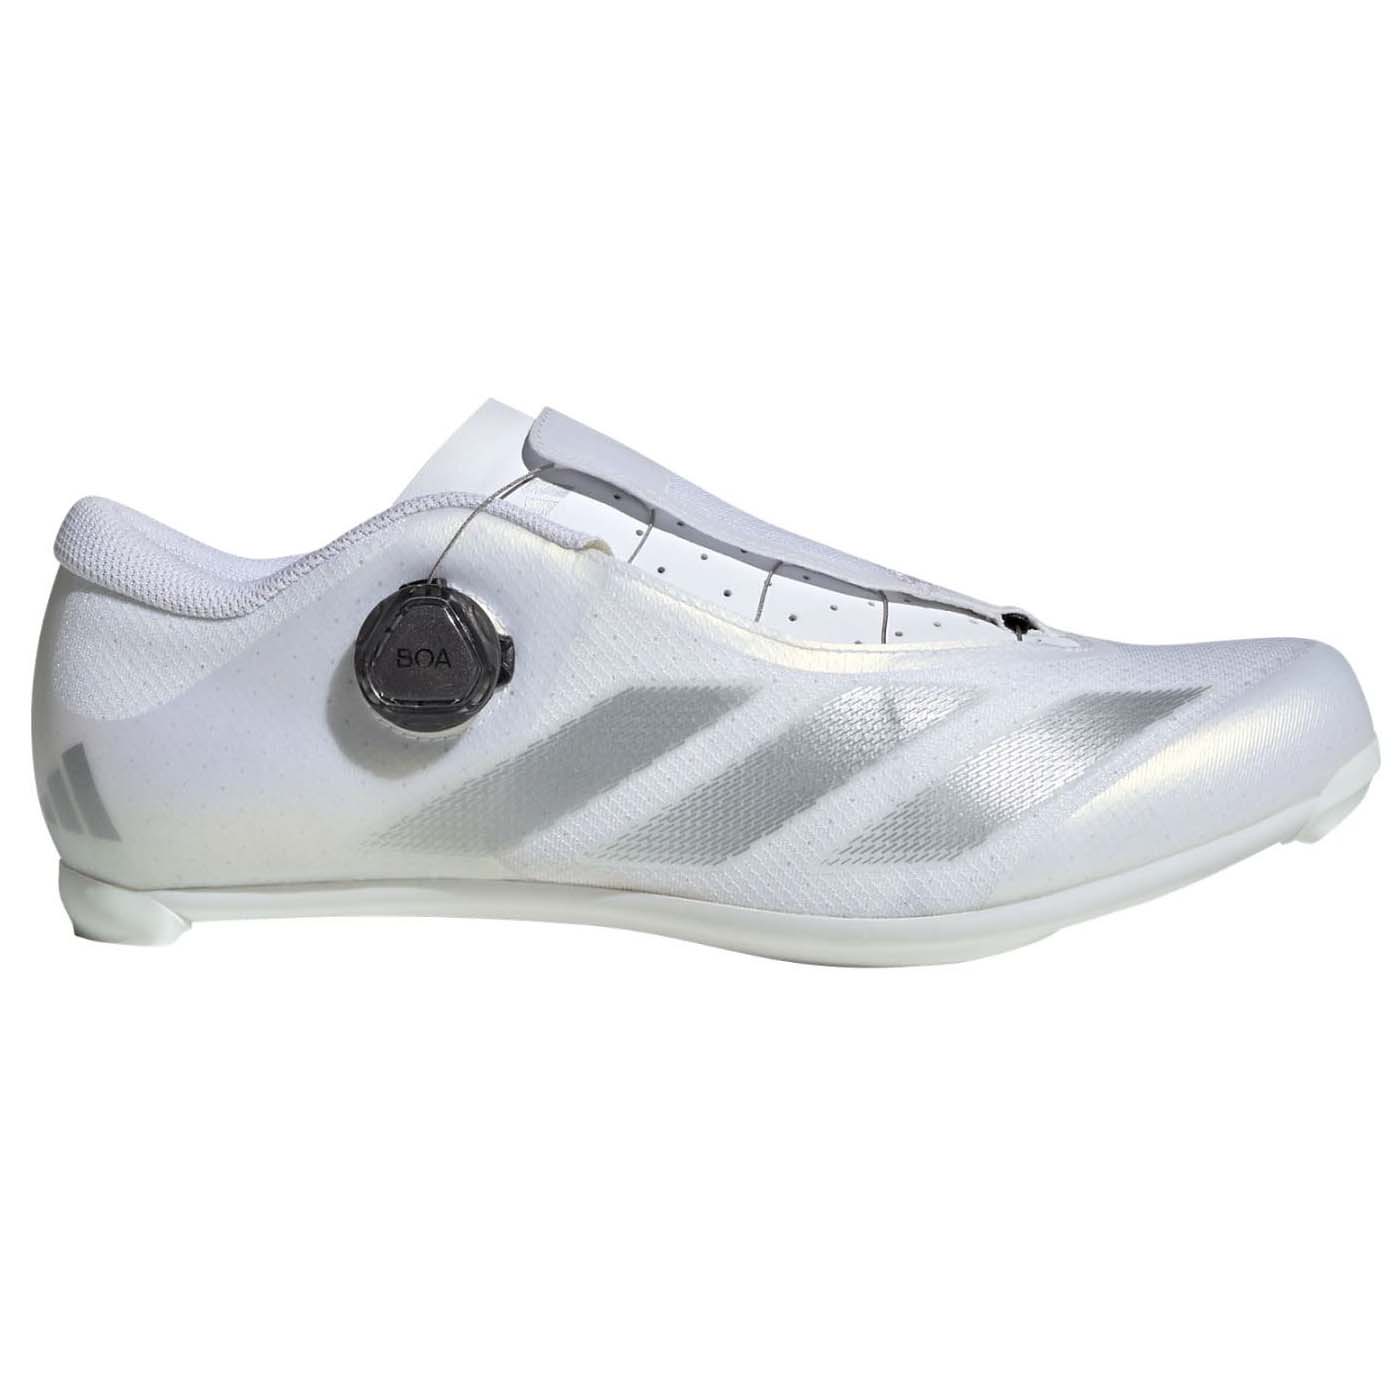 Кроссовки Adidas Performance Cycling, белый/серебристый/черный кроссовки adidas performance zapatillas ice purple